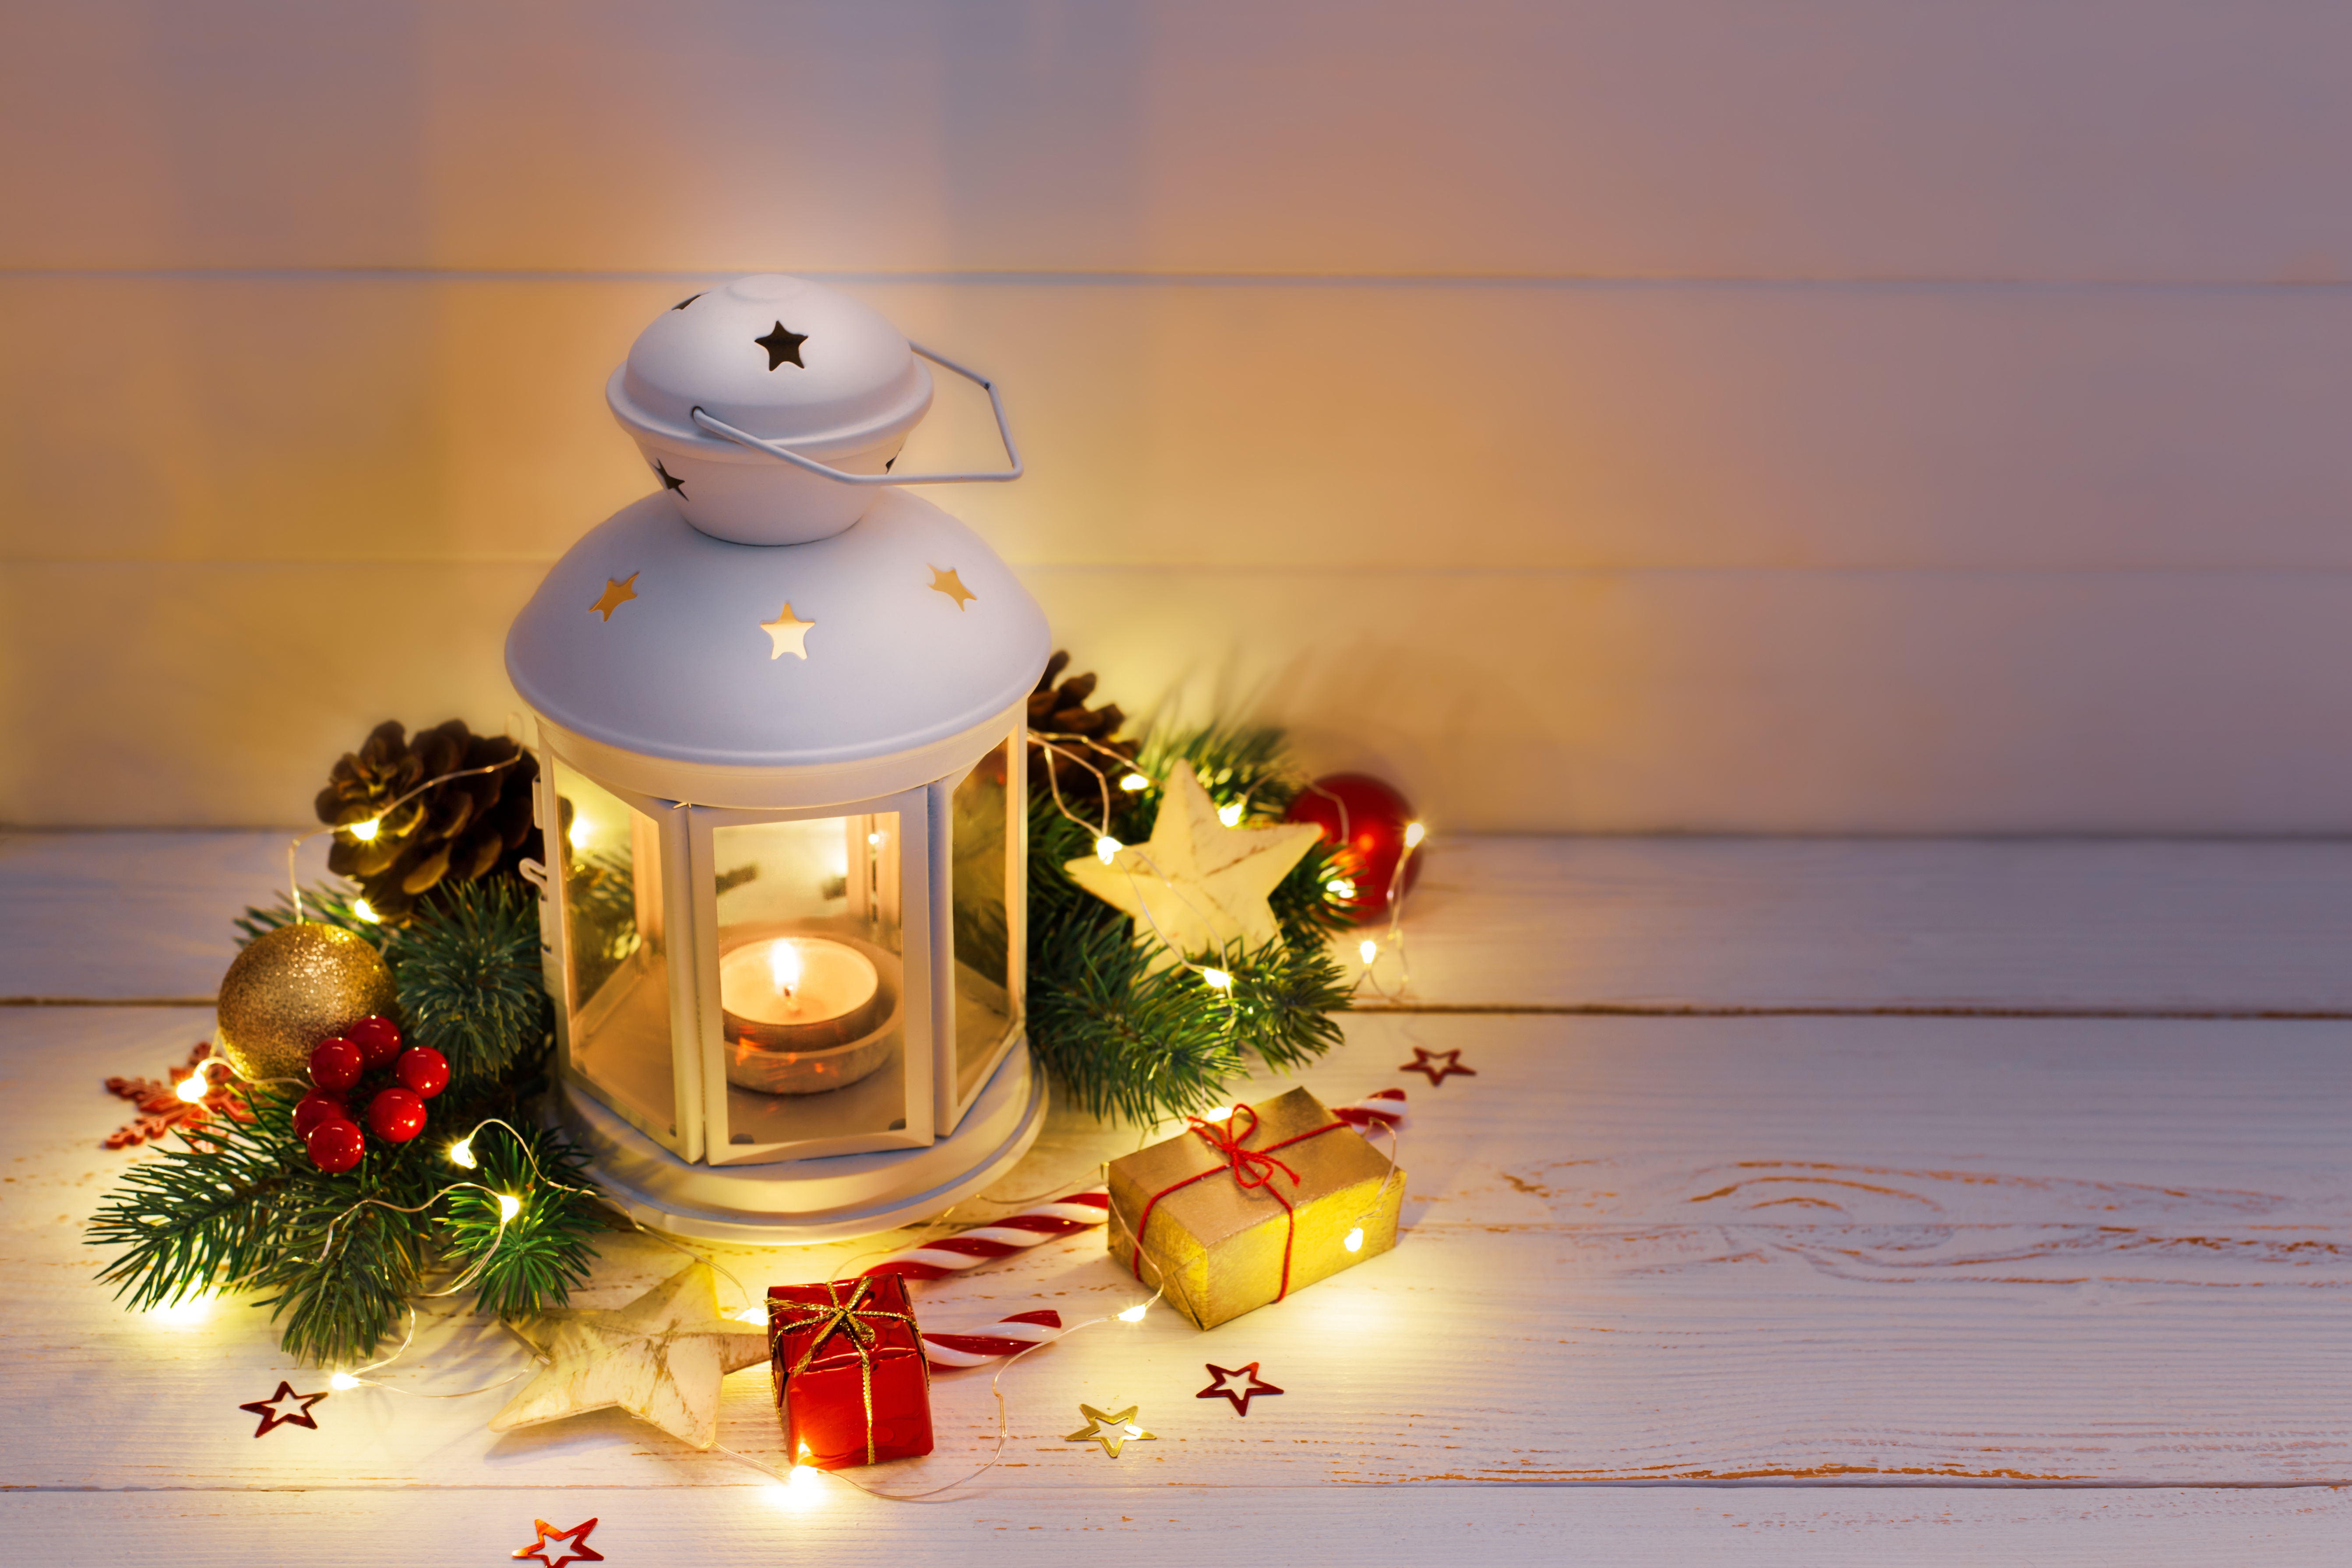 Free download wallpaper Christmas, Lantern, Gift, Man Made on your PC desktop